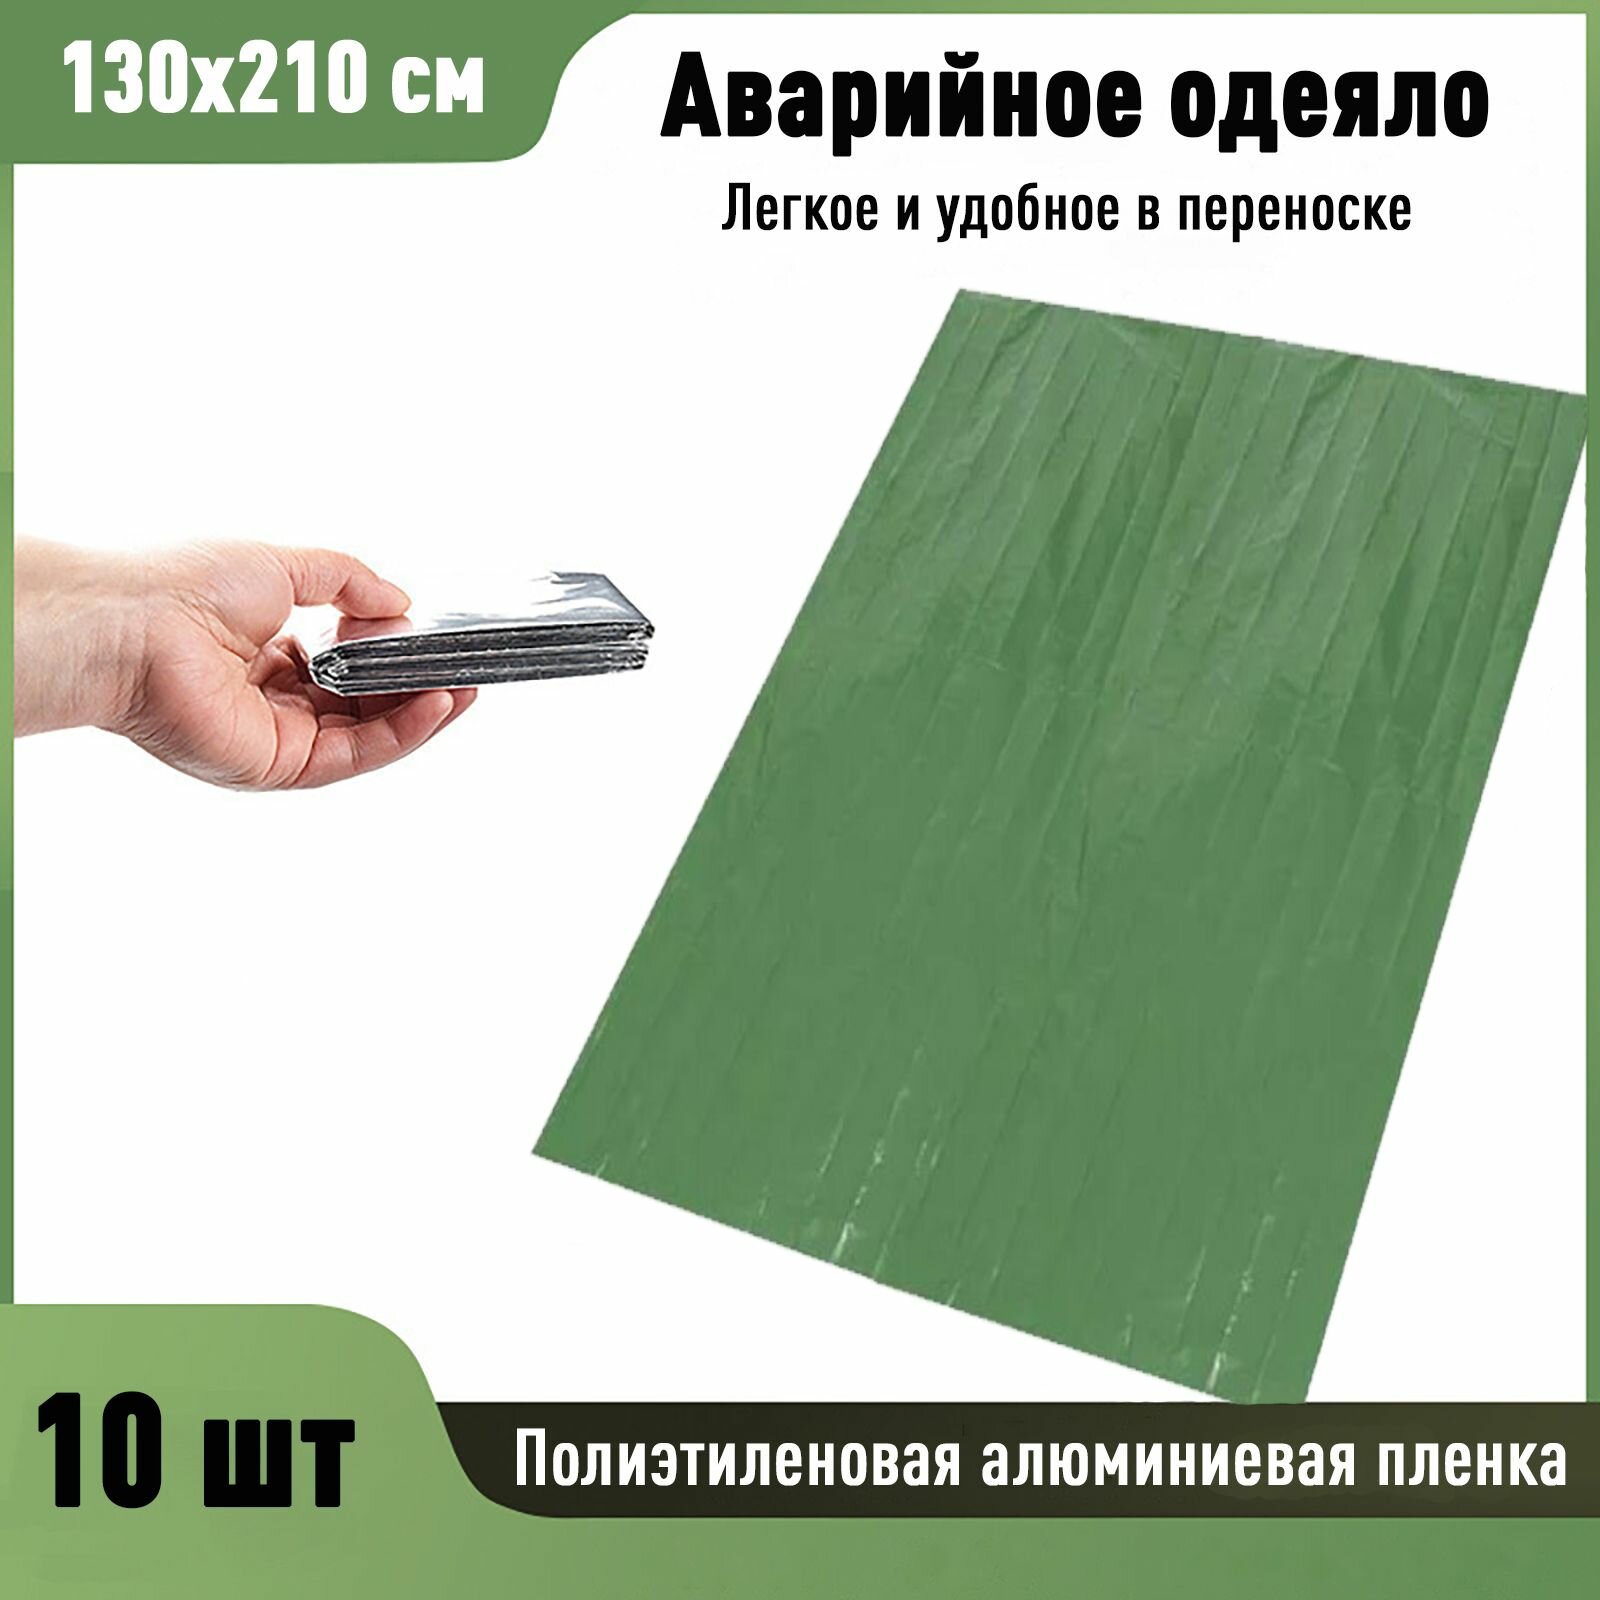 Аварийное одеяло, спасательный туристический фольгированный спальный мешок зеленый 130х210 см 10 шт